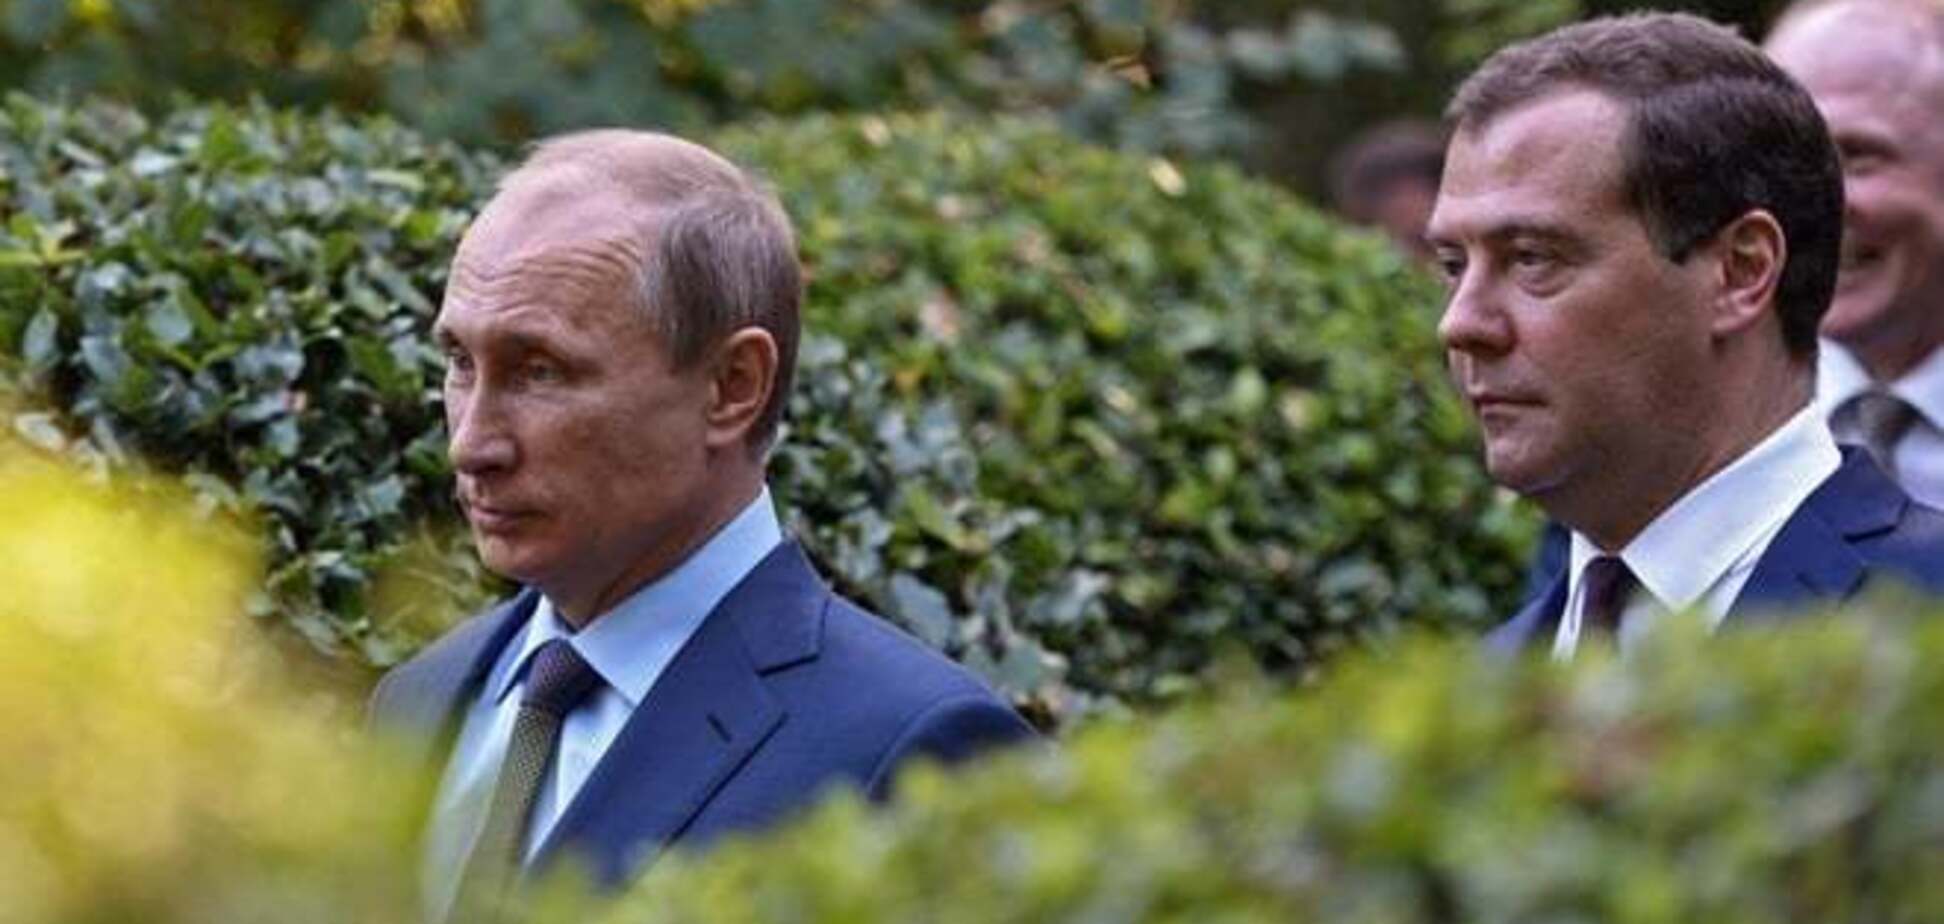 Чалый VS 'Невменяйло': Севастополь встречает Путина серьезным скандалом